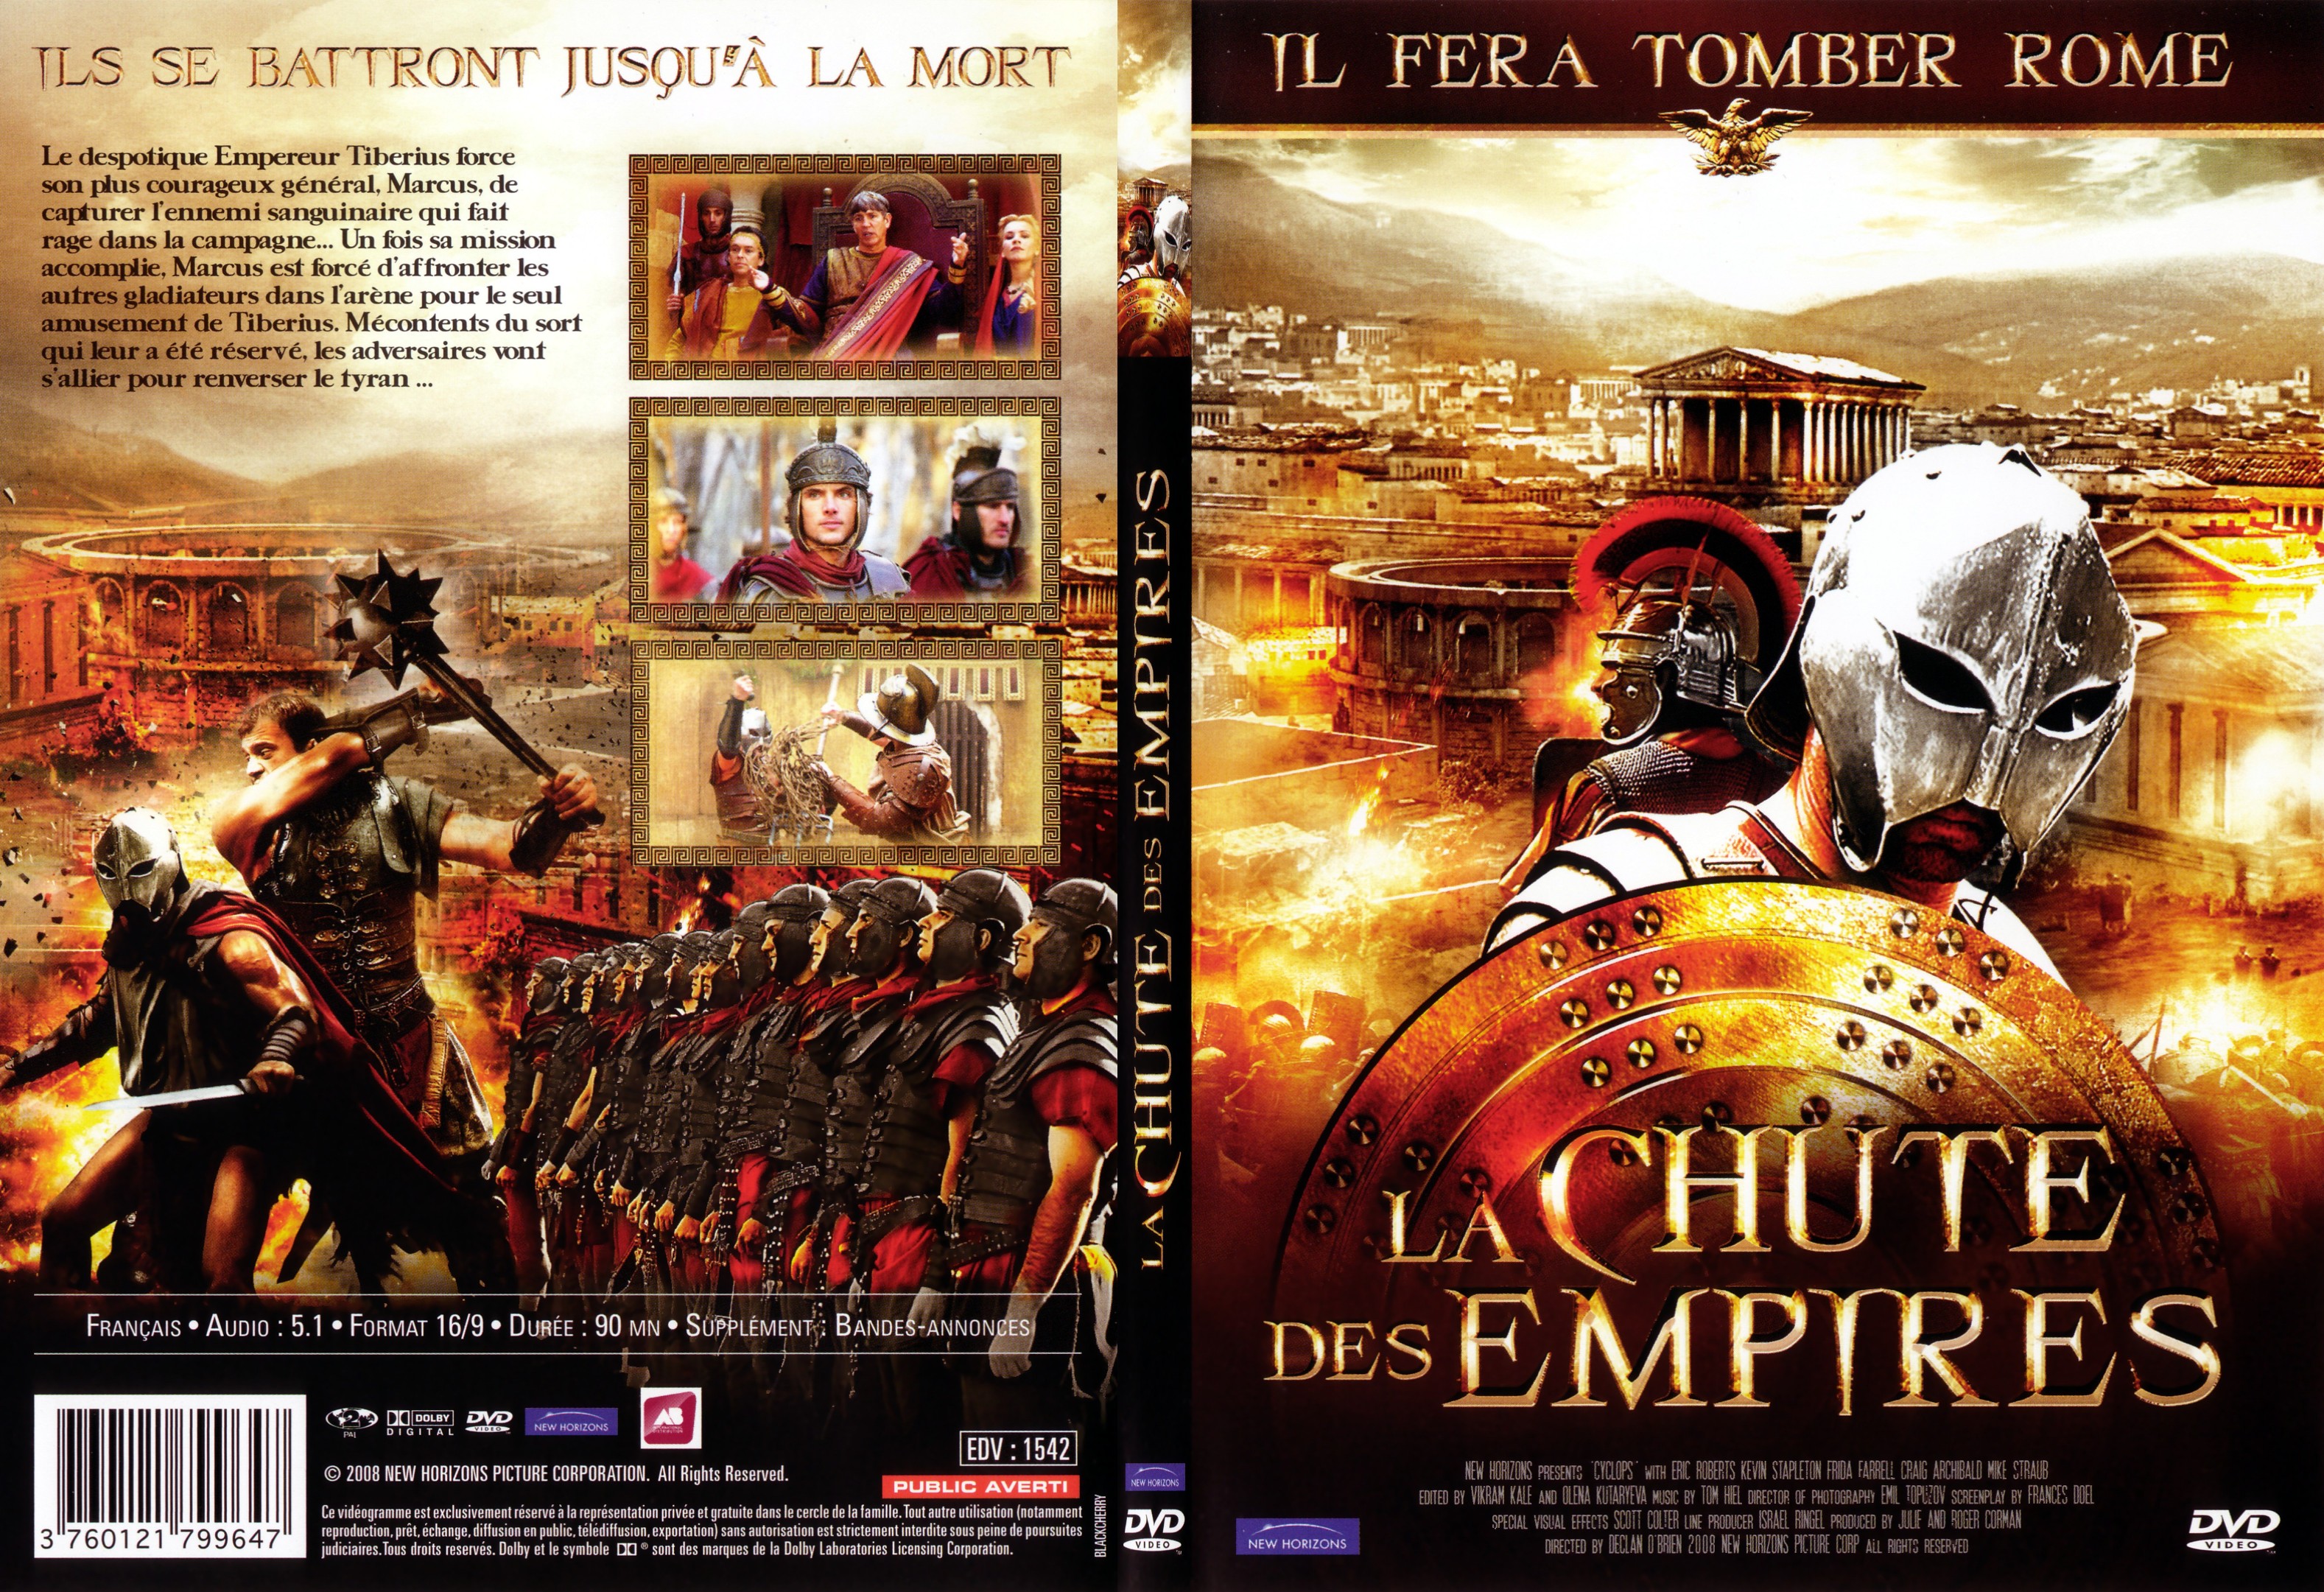 Jaquette DVD La chute des empires - SLIM